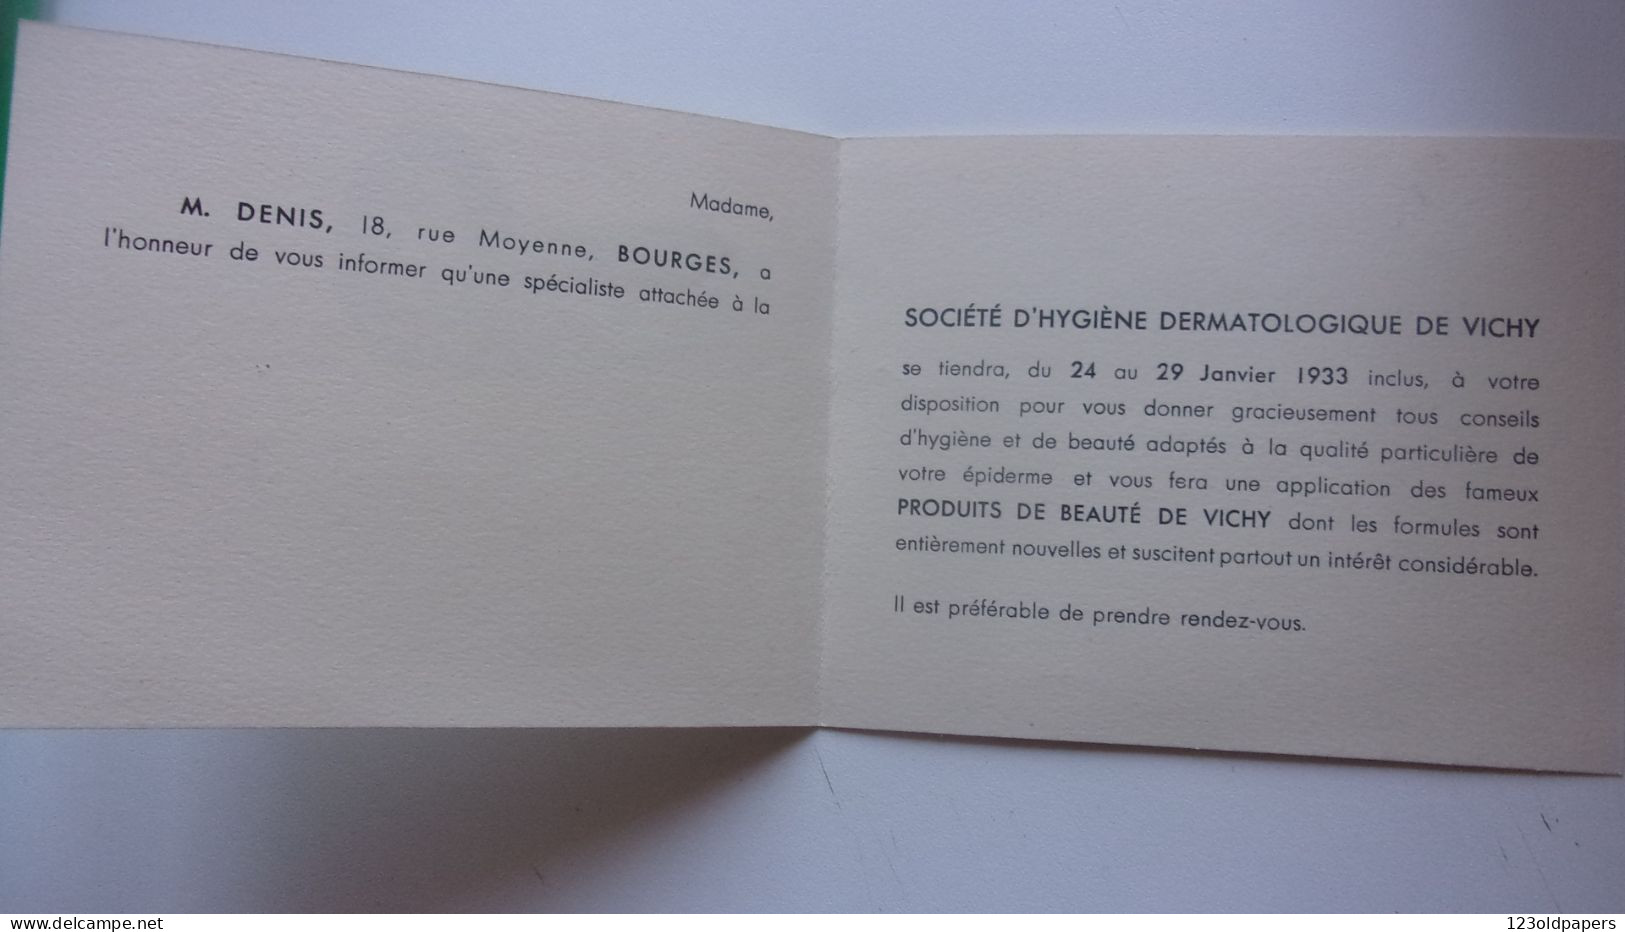 03 - VICHY - CARTE INVITATION 1933 FEMME FONTAINE SOCIETE D HYGIENE DERMATOLOGIQUE DE VICHY 17 RUE GEORGES CLEMENCEAU - Vichy